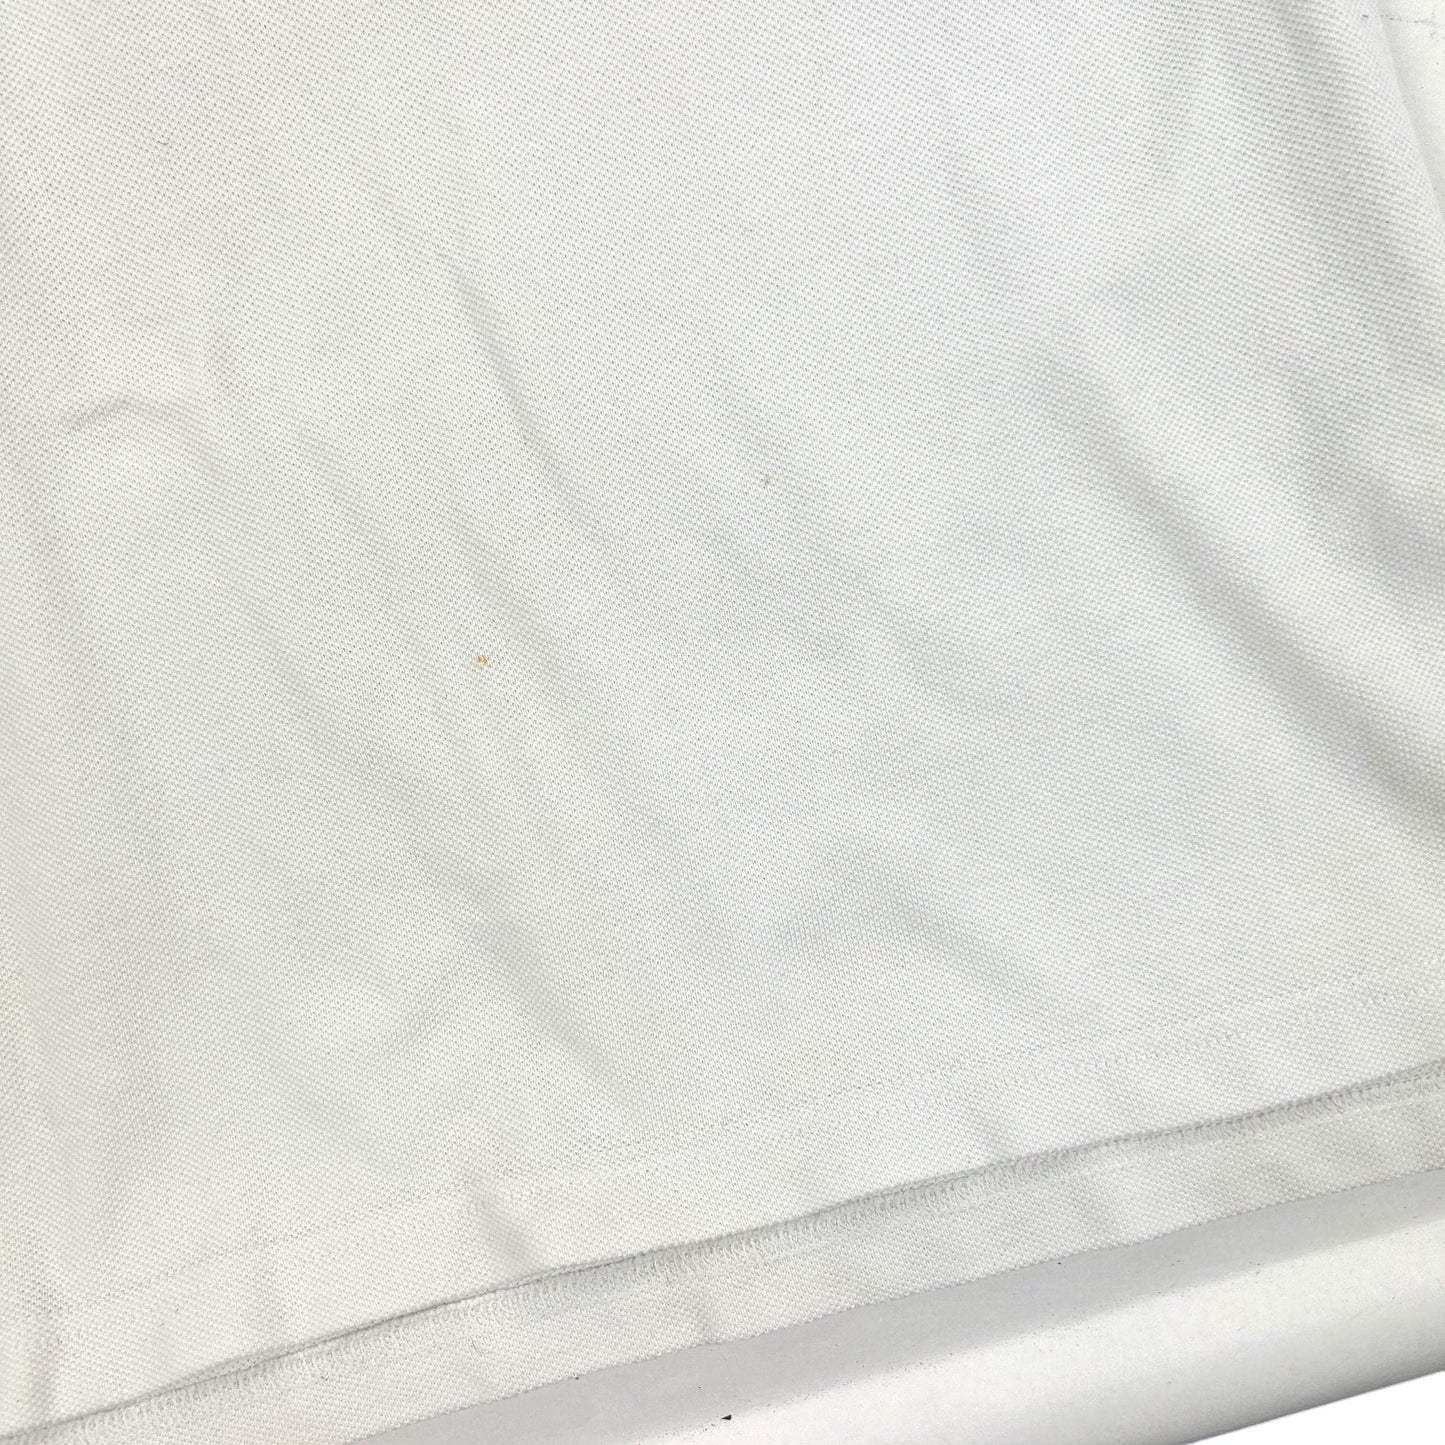 Vintage Yves Saint Laurent Striped Polo T Shirt Size L